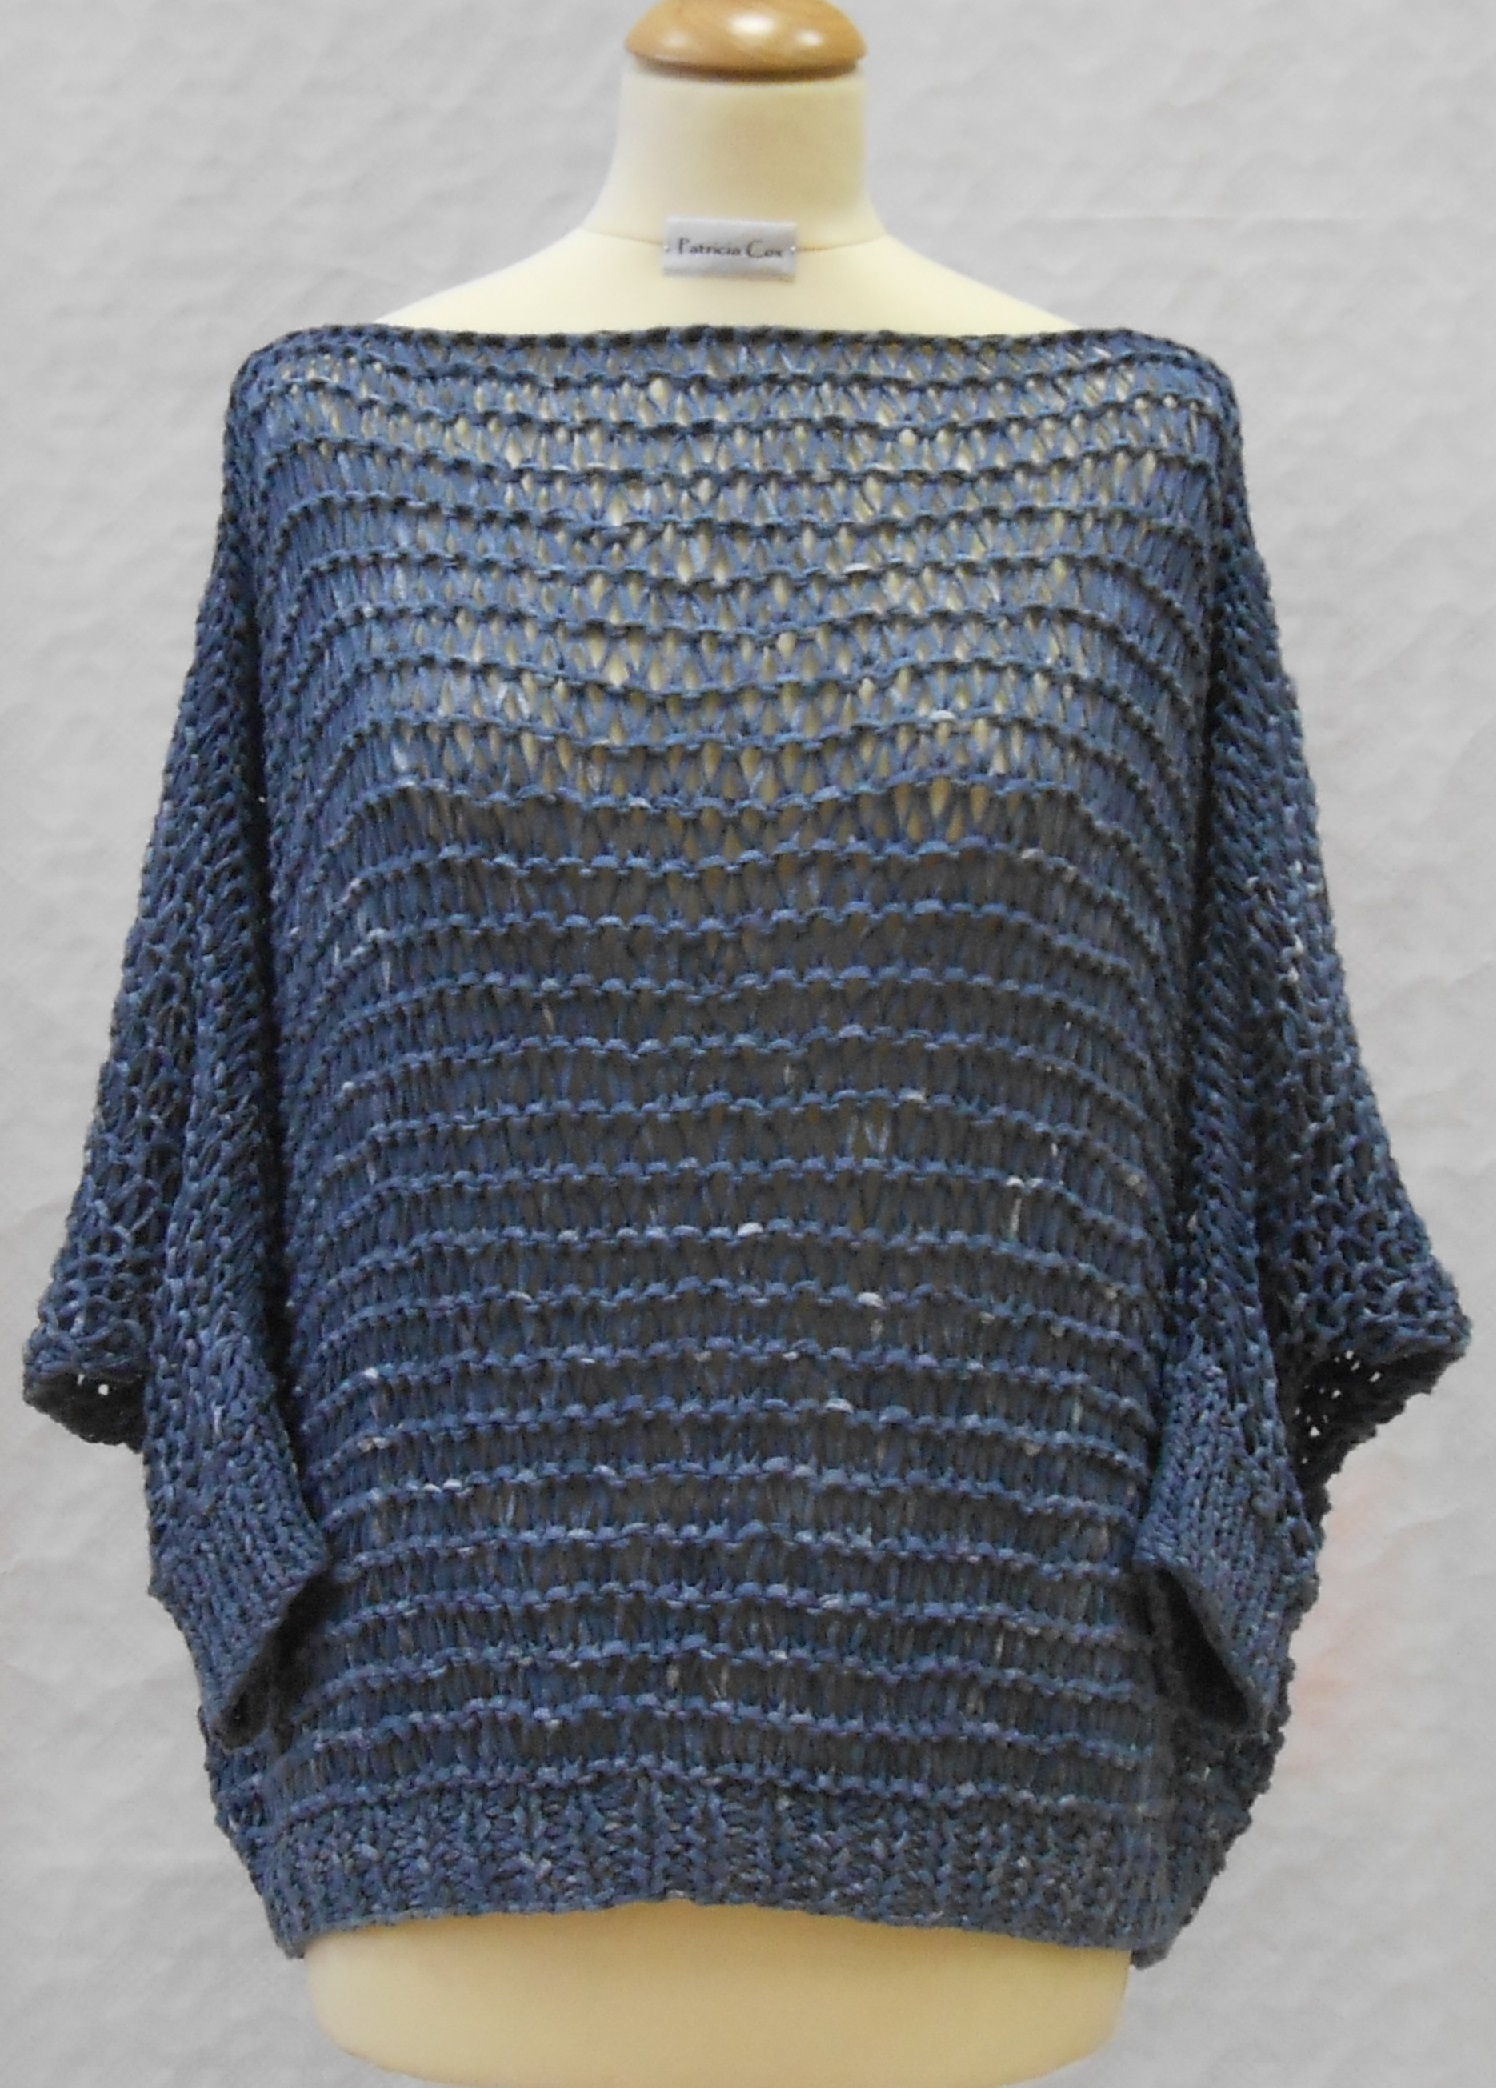 Knitting Pattern Dress Year Round Oversized Summer Tee Shirt And Sweater Knitting Pattern